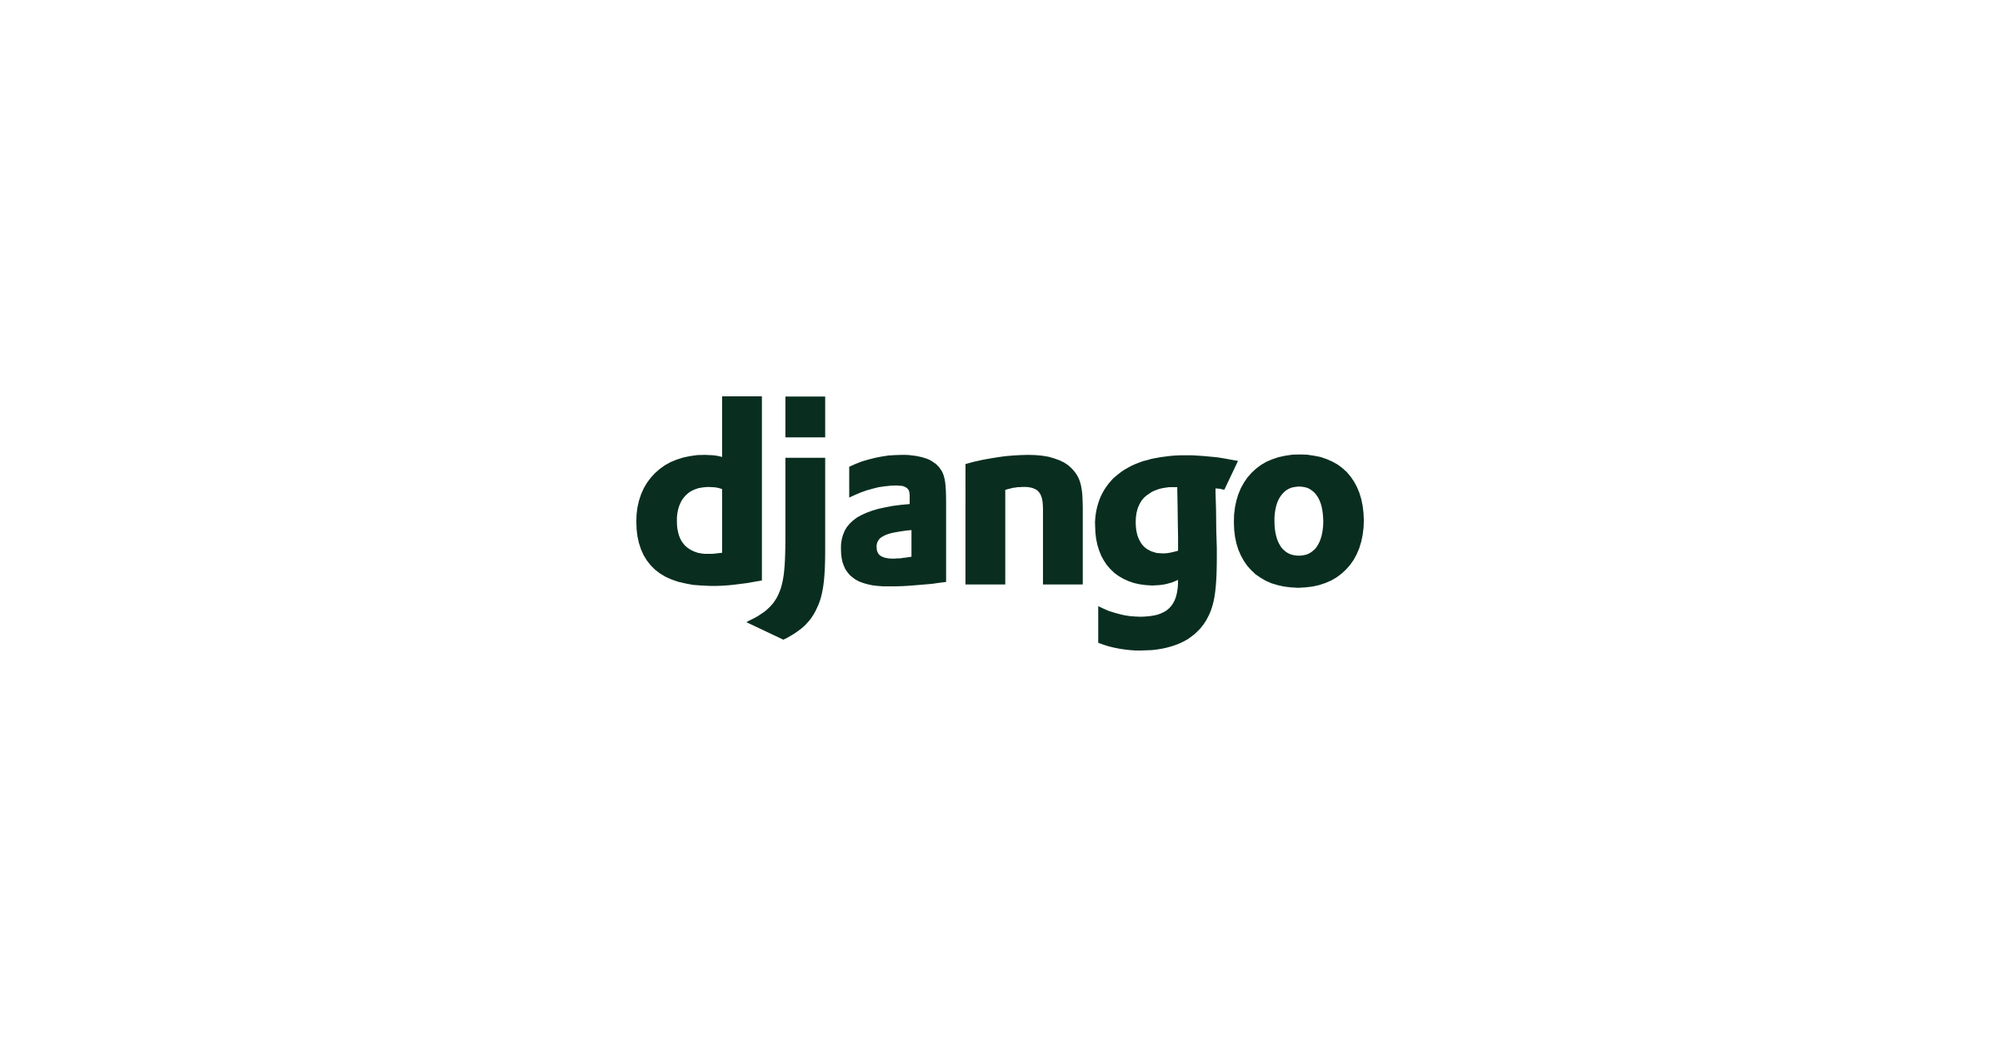 Django иконка. Эмблема Джанго. Django Framework. Группа Джанго логотип. Django теги